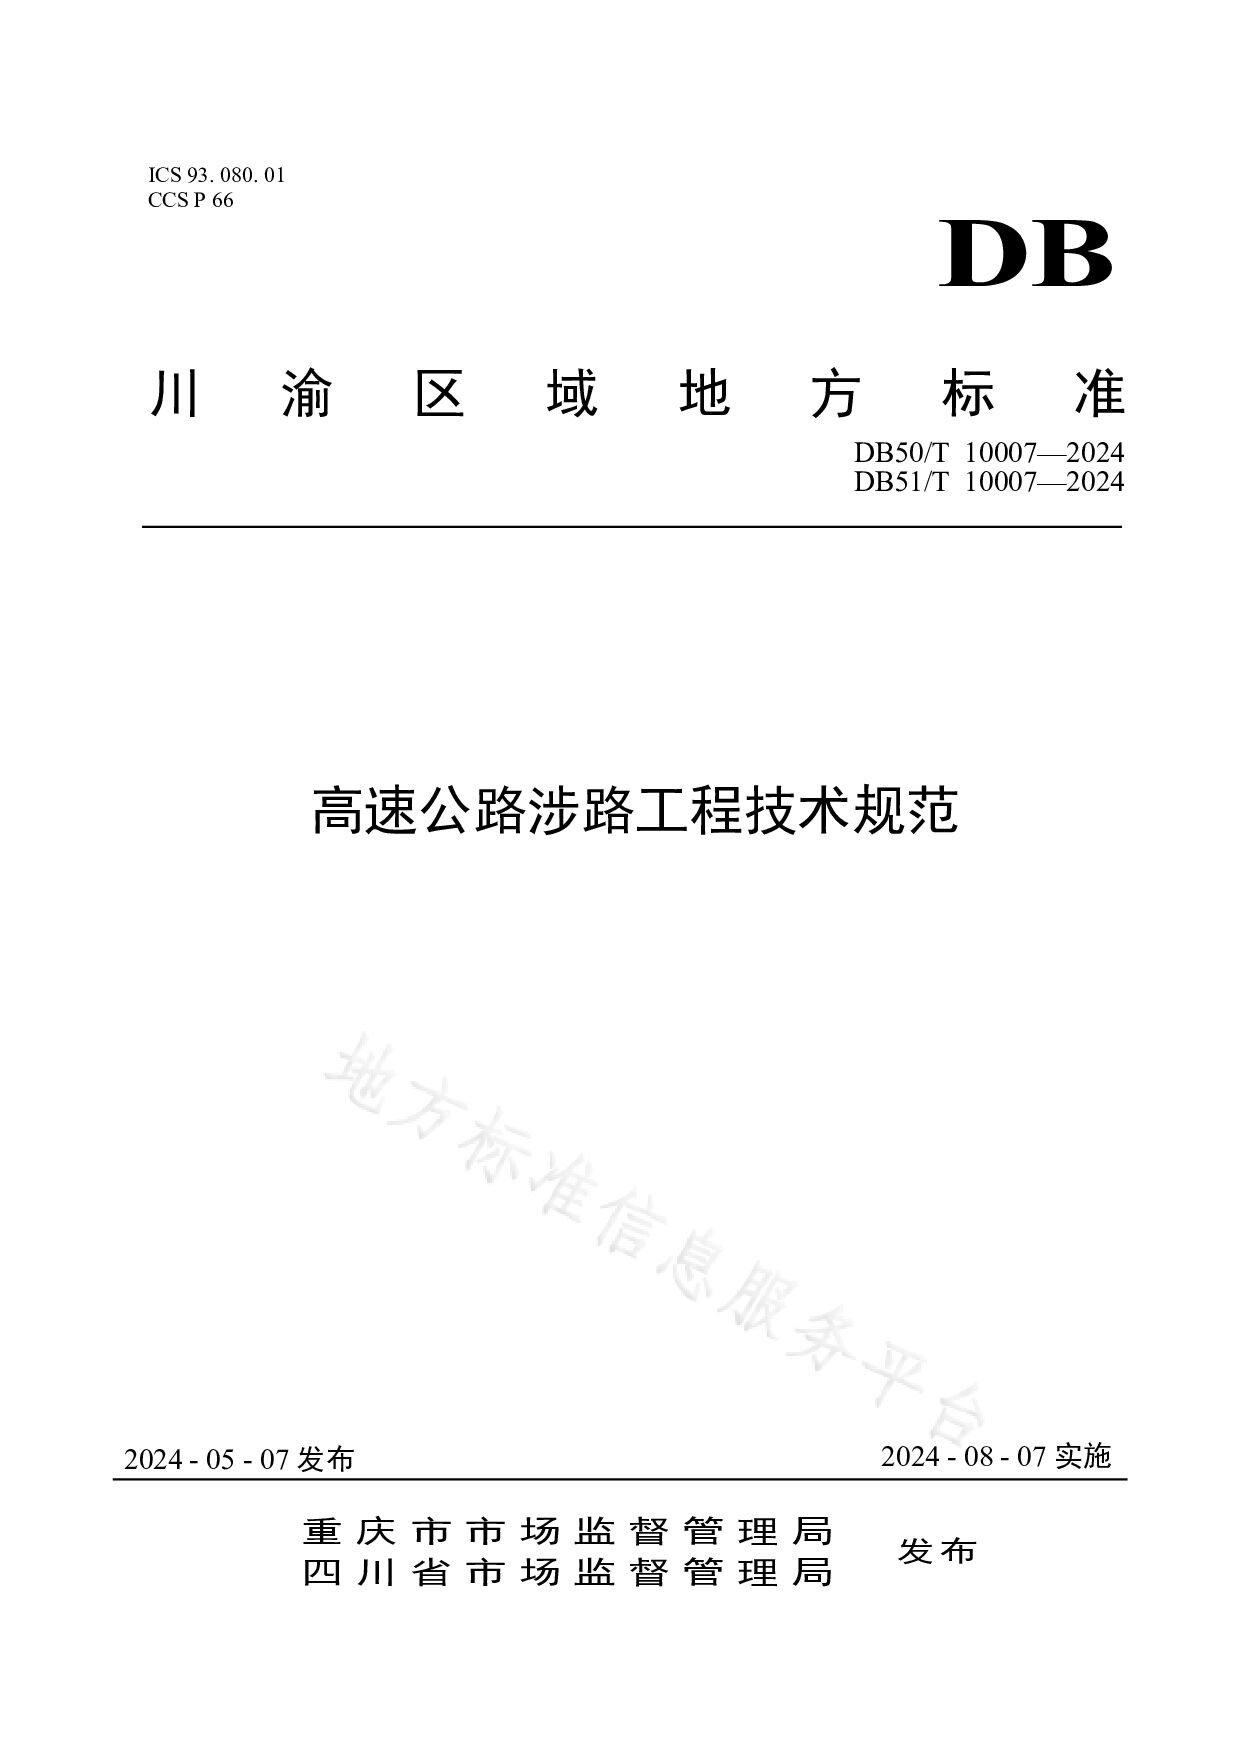 DB50/T 10007-2024封面图